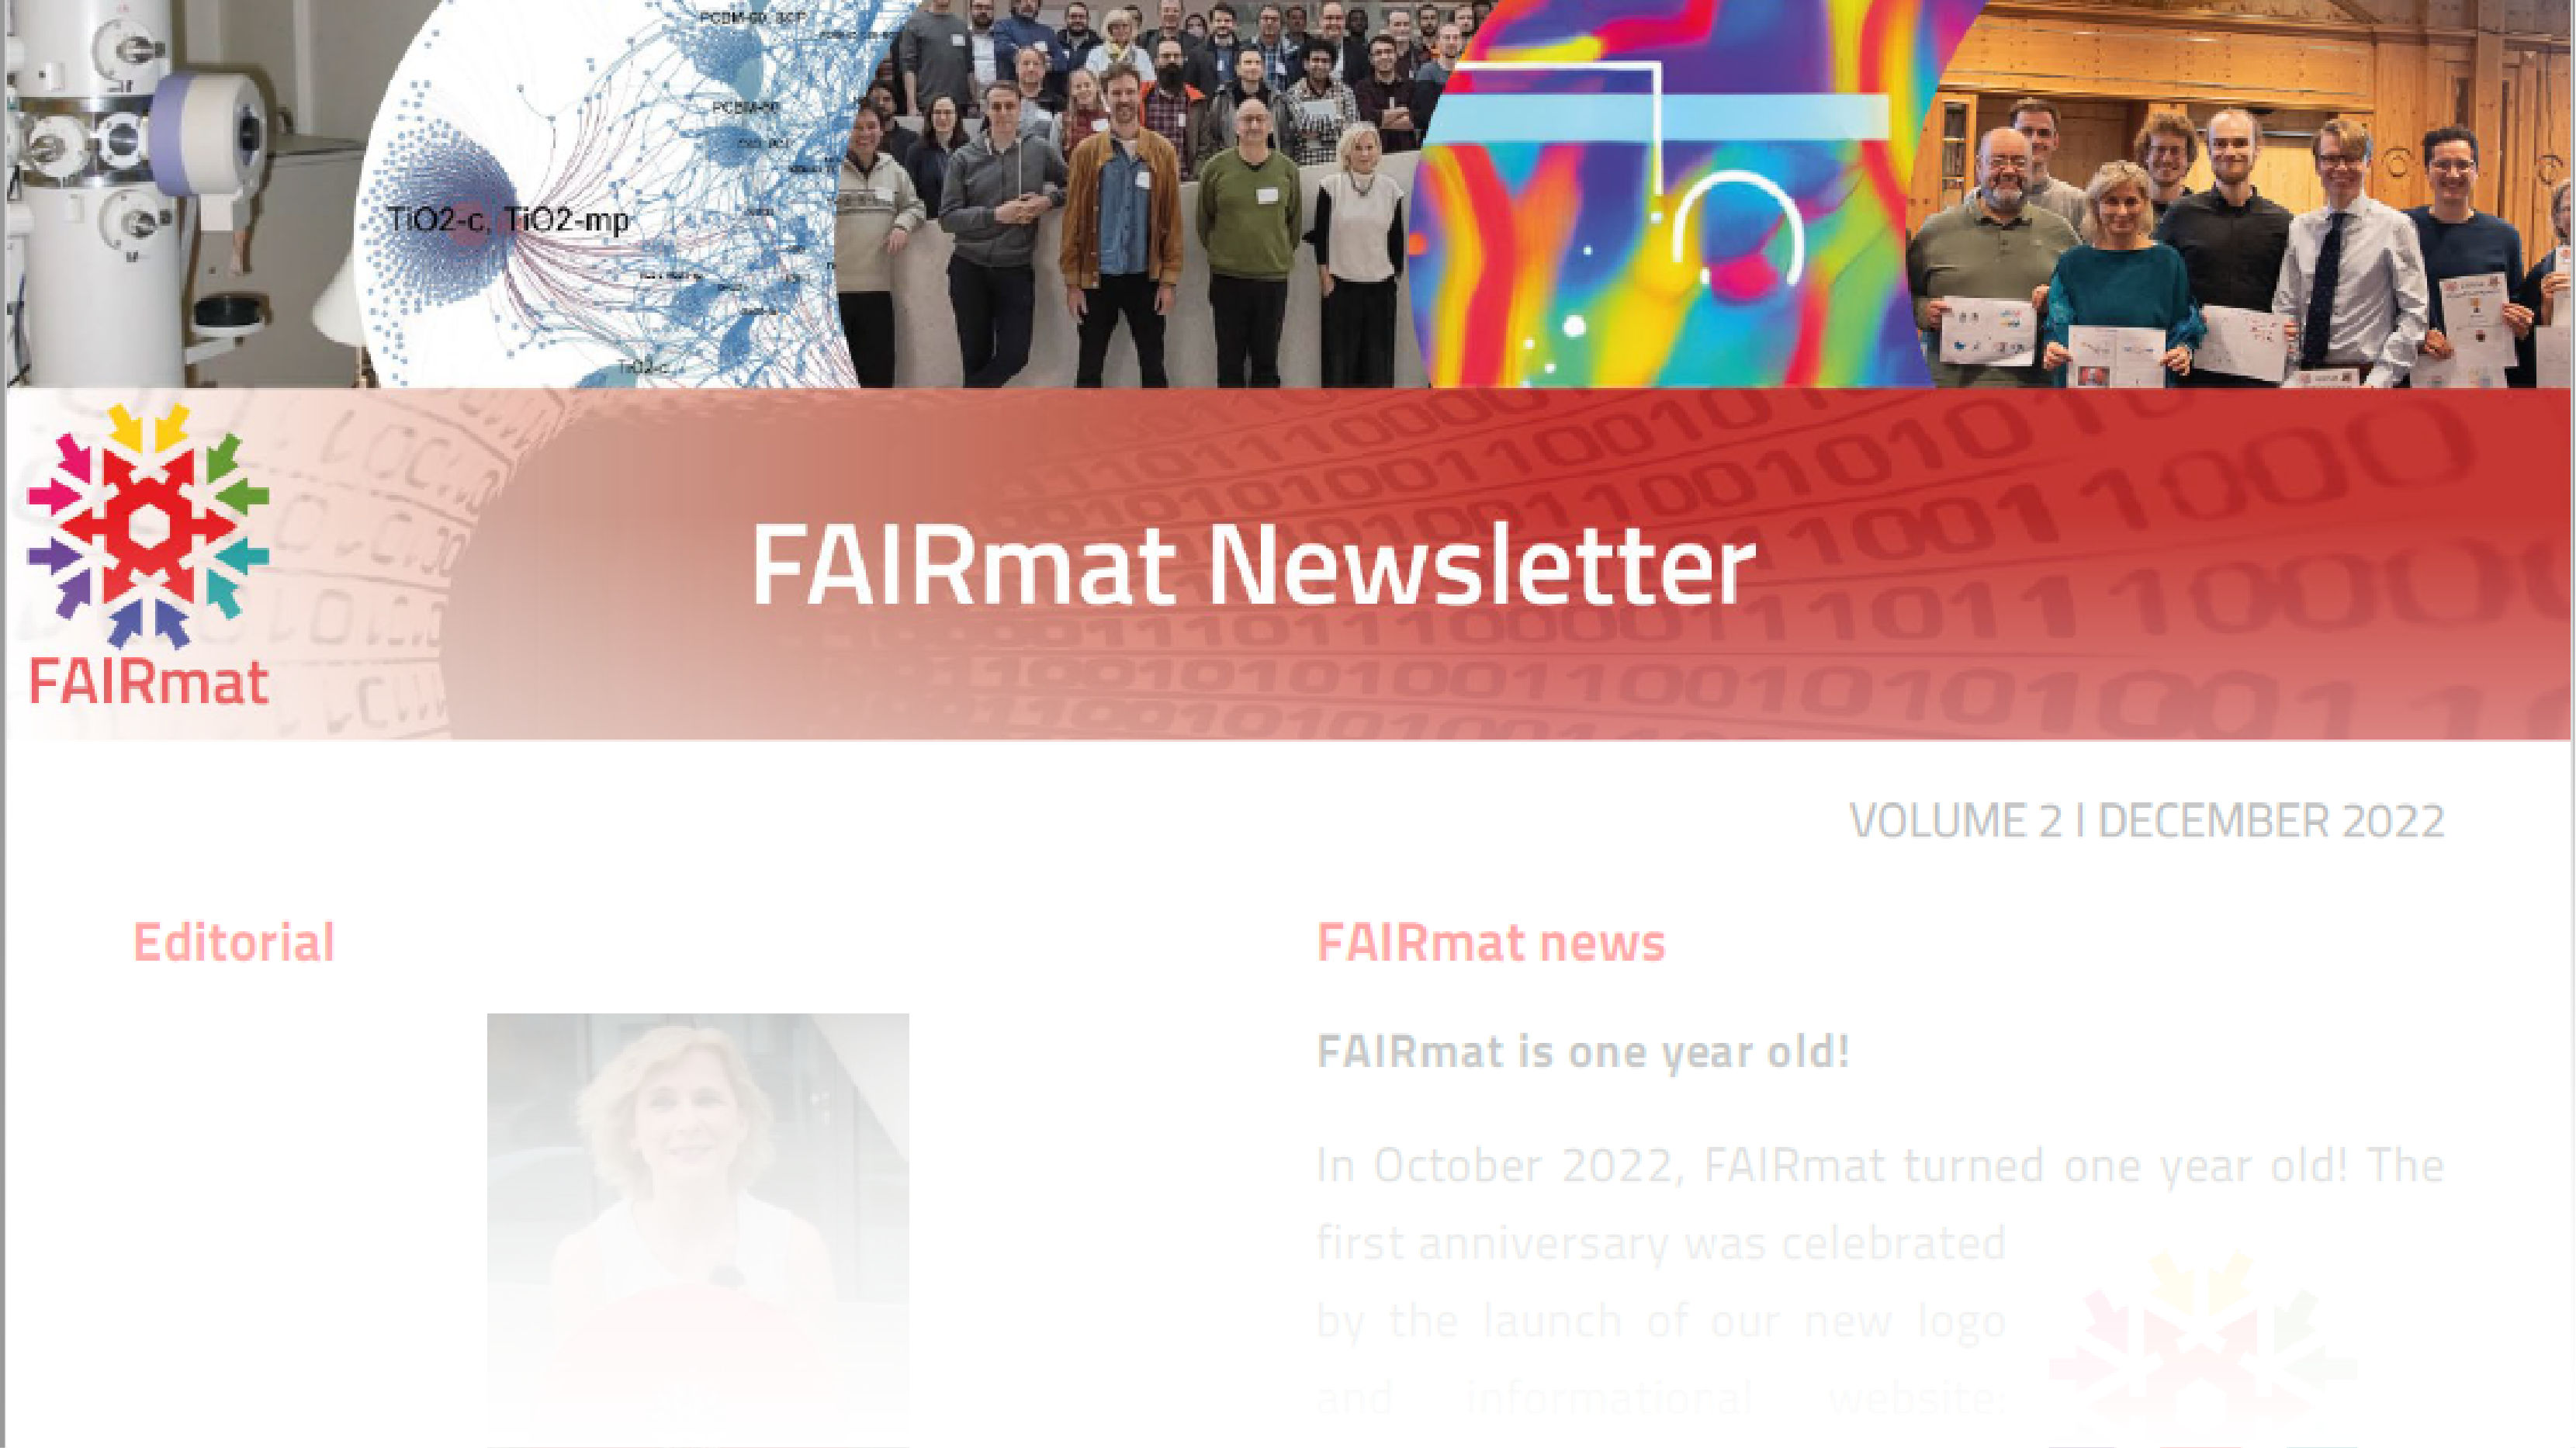 FAIRmat newsletter volume 2